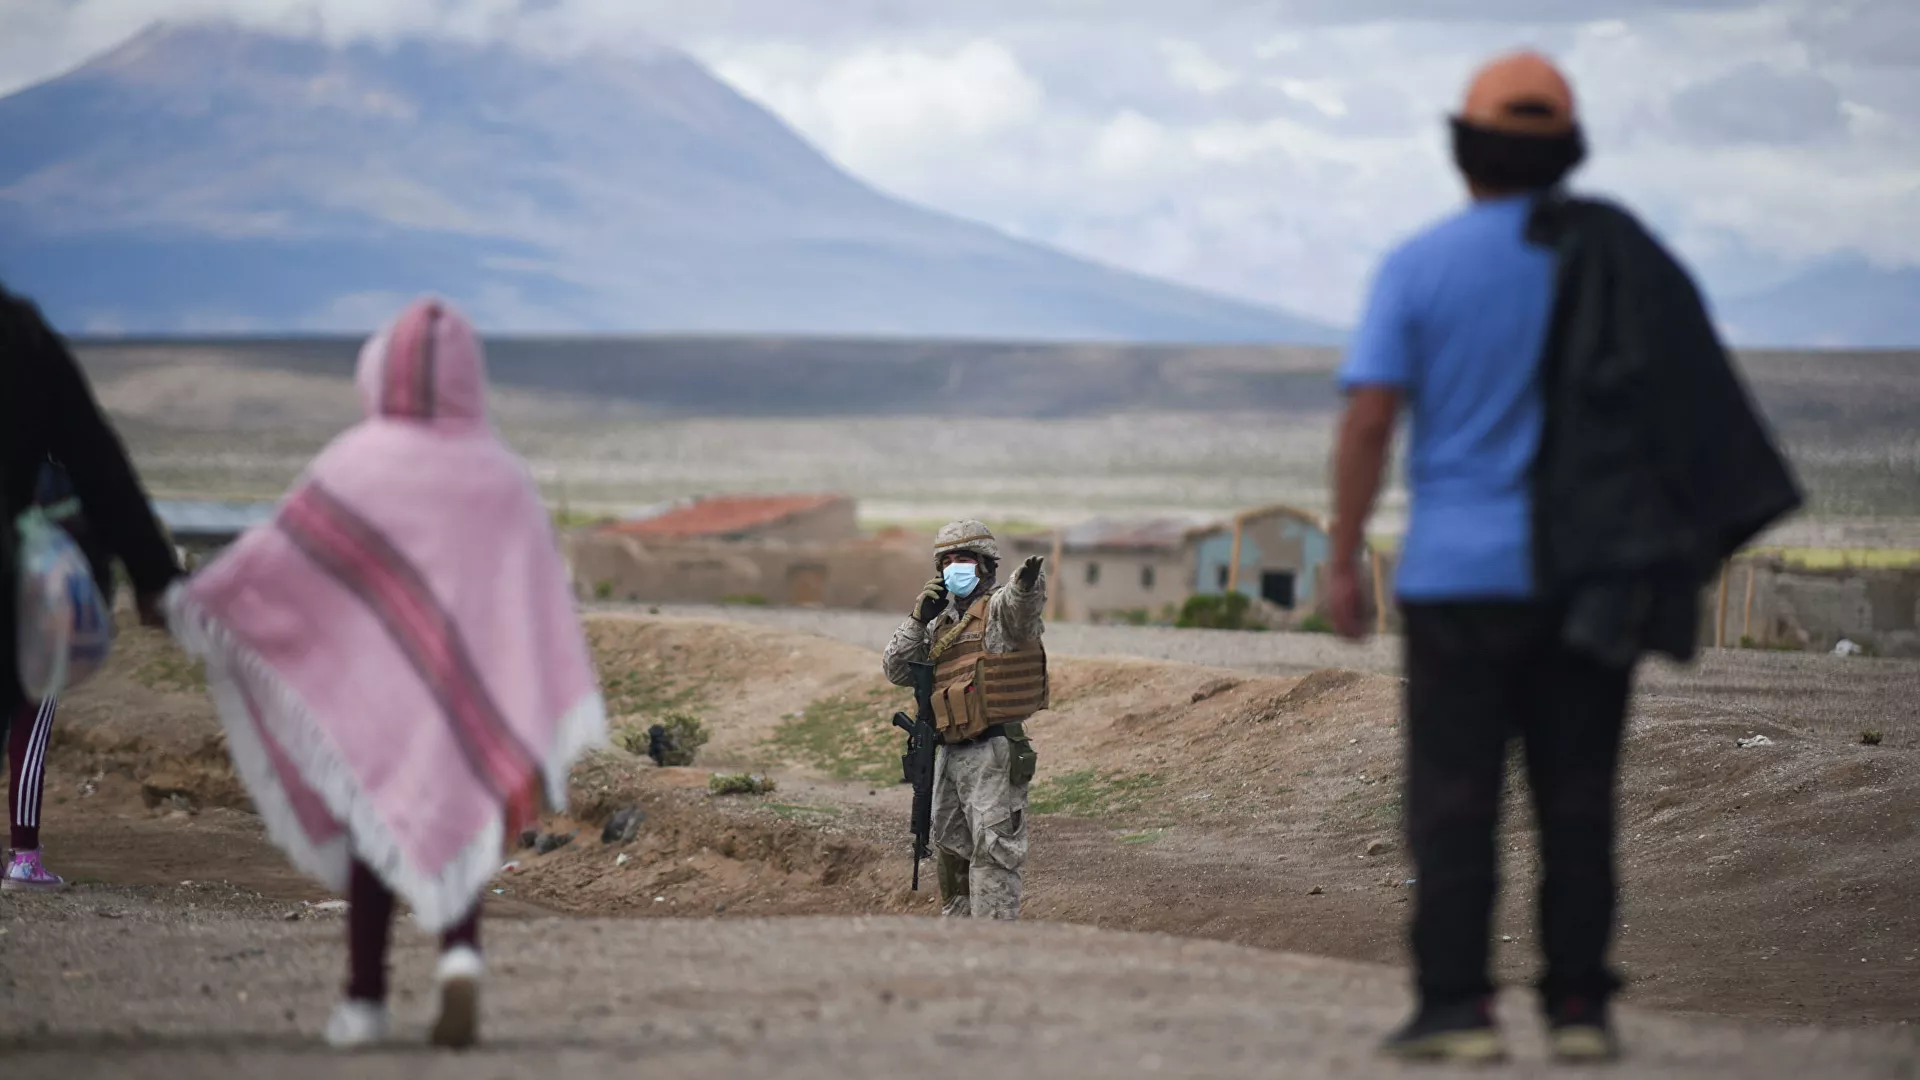  Chile militariza su frontera mientras negocia con Bolivia sobre migraciones y contrabando